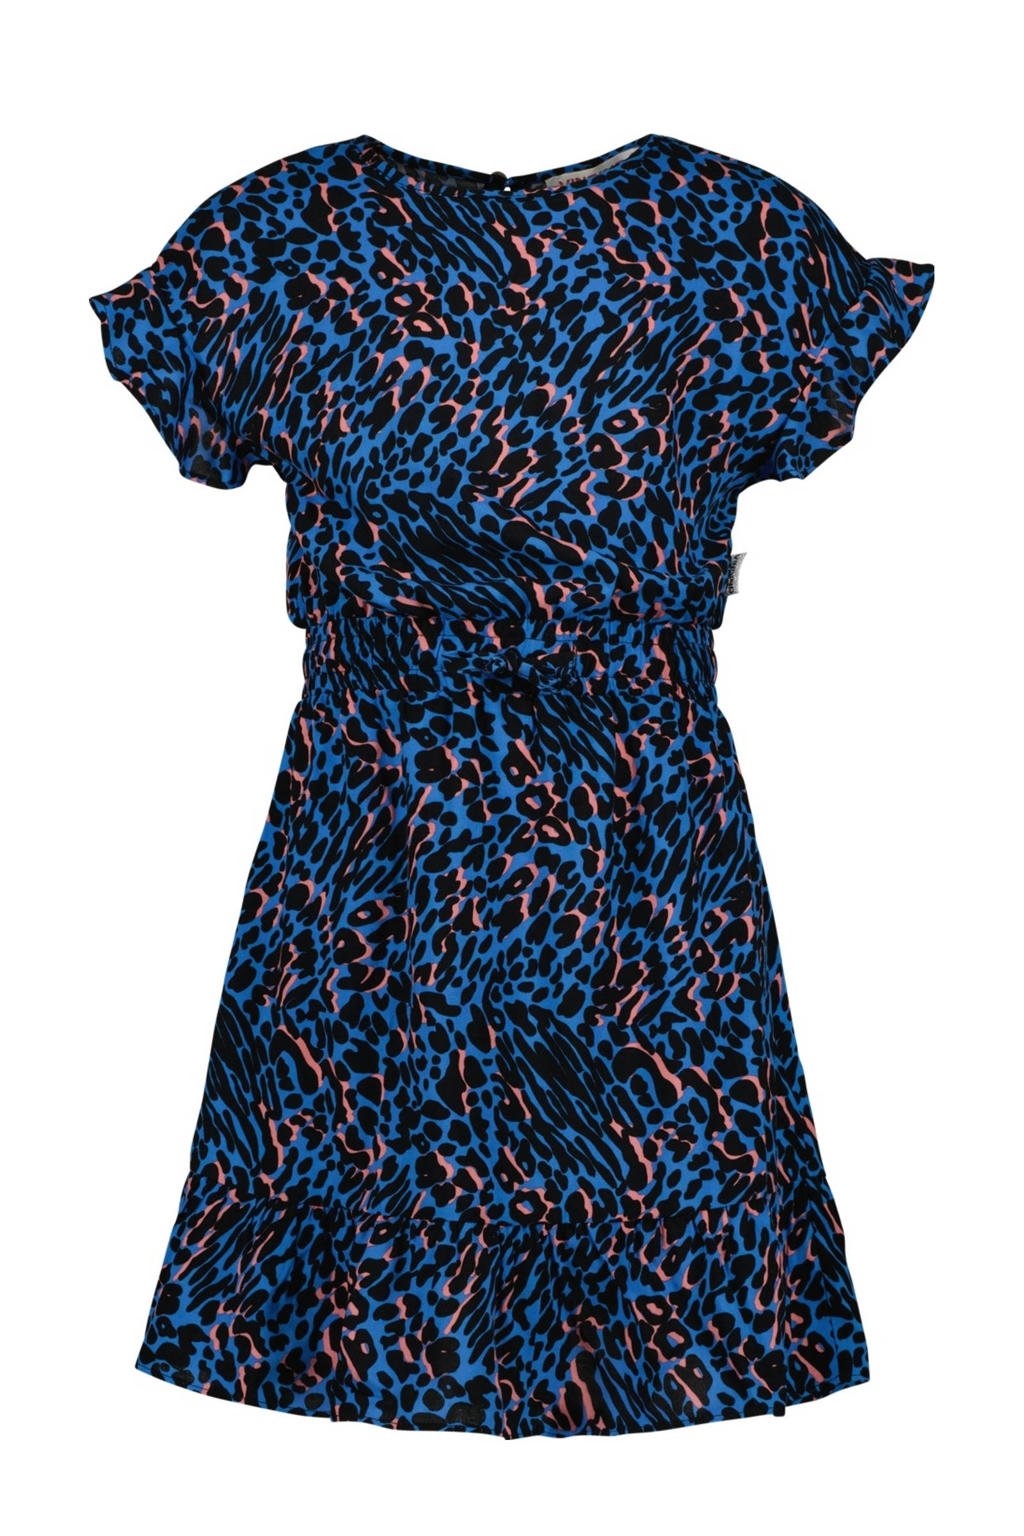 Donkerblauw en zwarte meisjes Vingino jurk van viscose met panterprint, korte mouwen, ronde hals en knoopsluiting